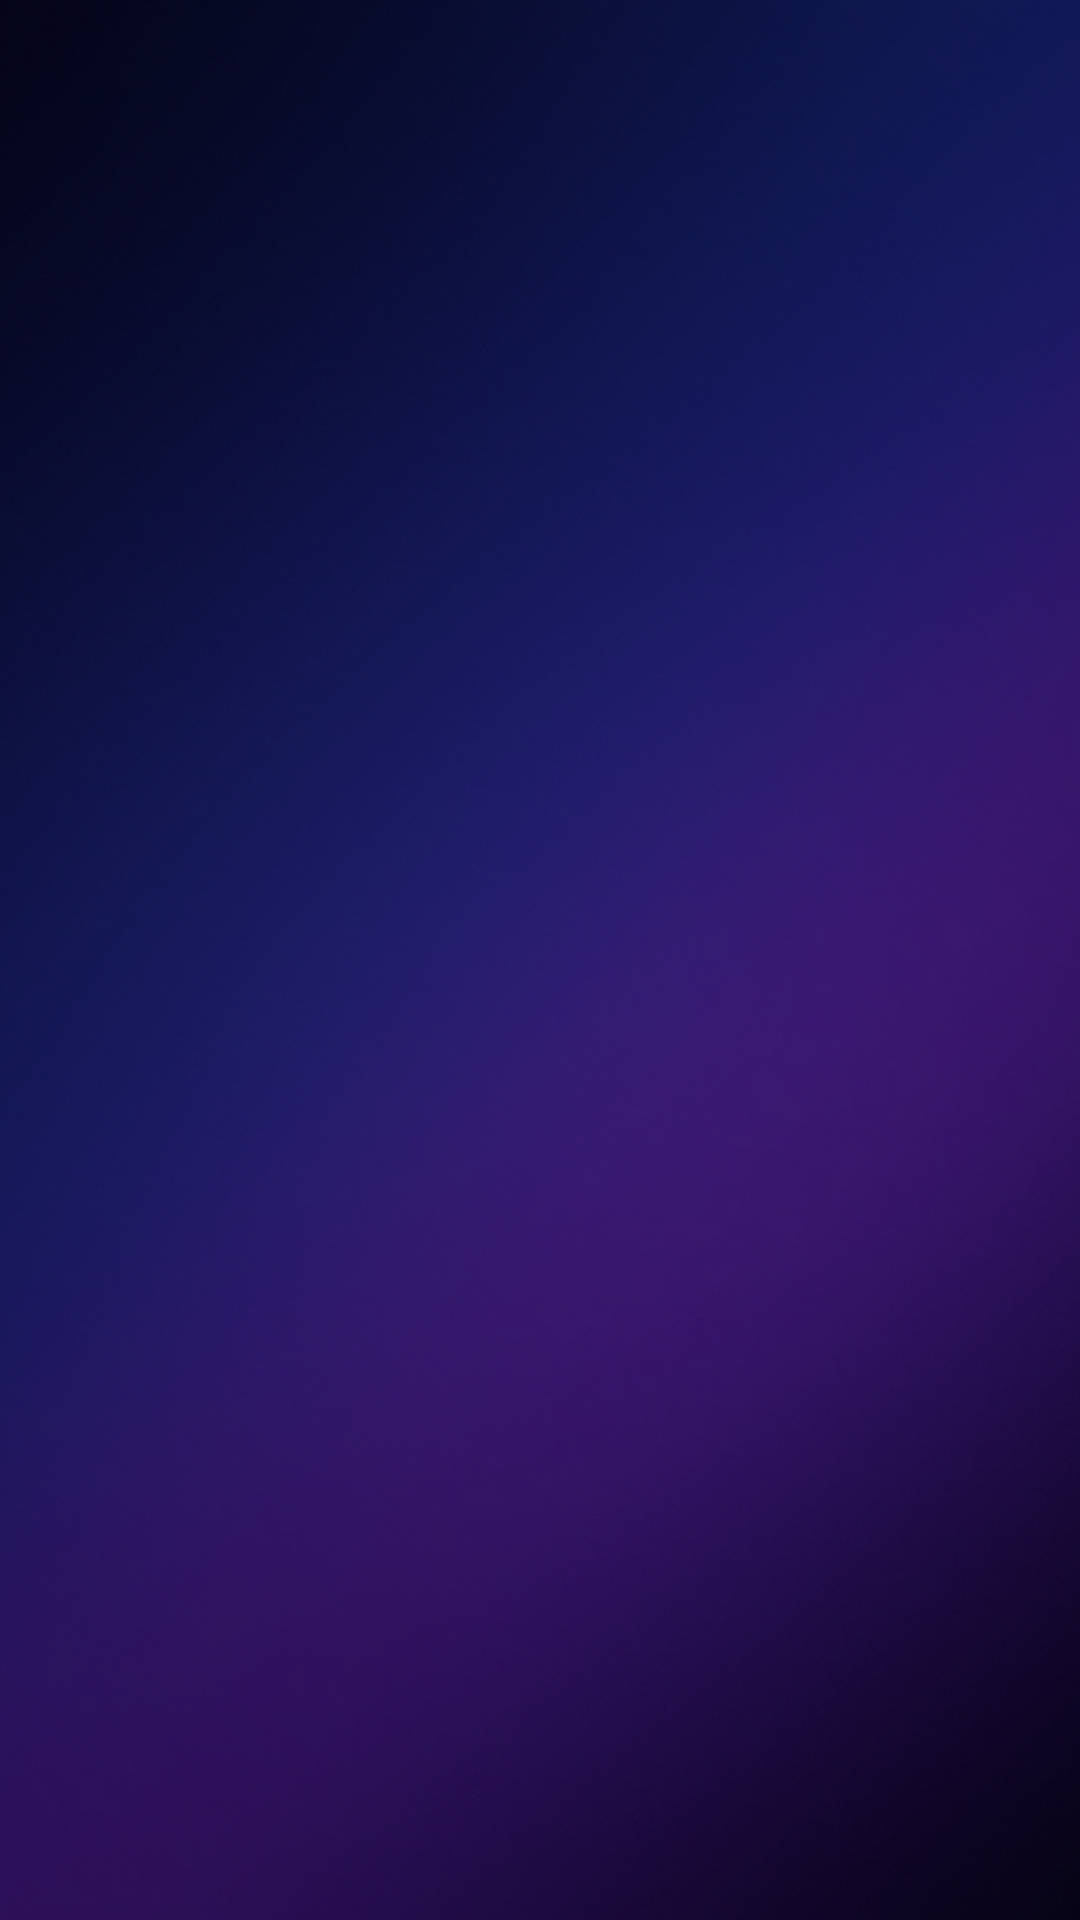 Galaxiaazul Y Violeta S10 Fondo de pantalla